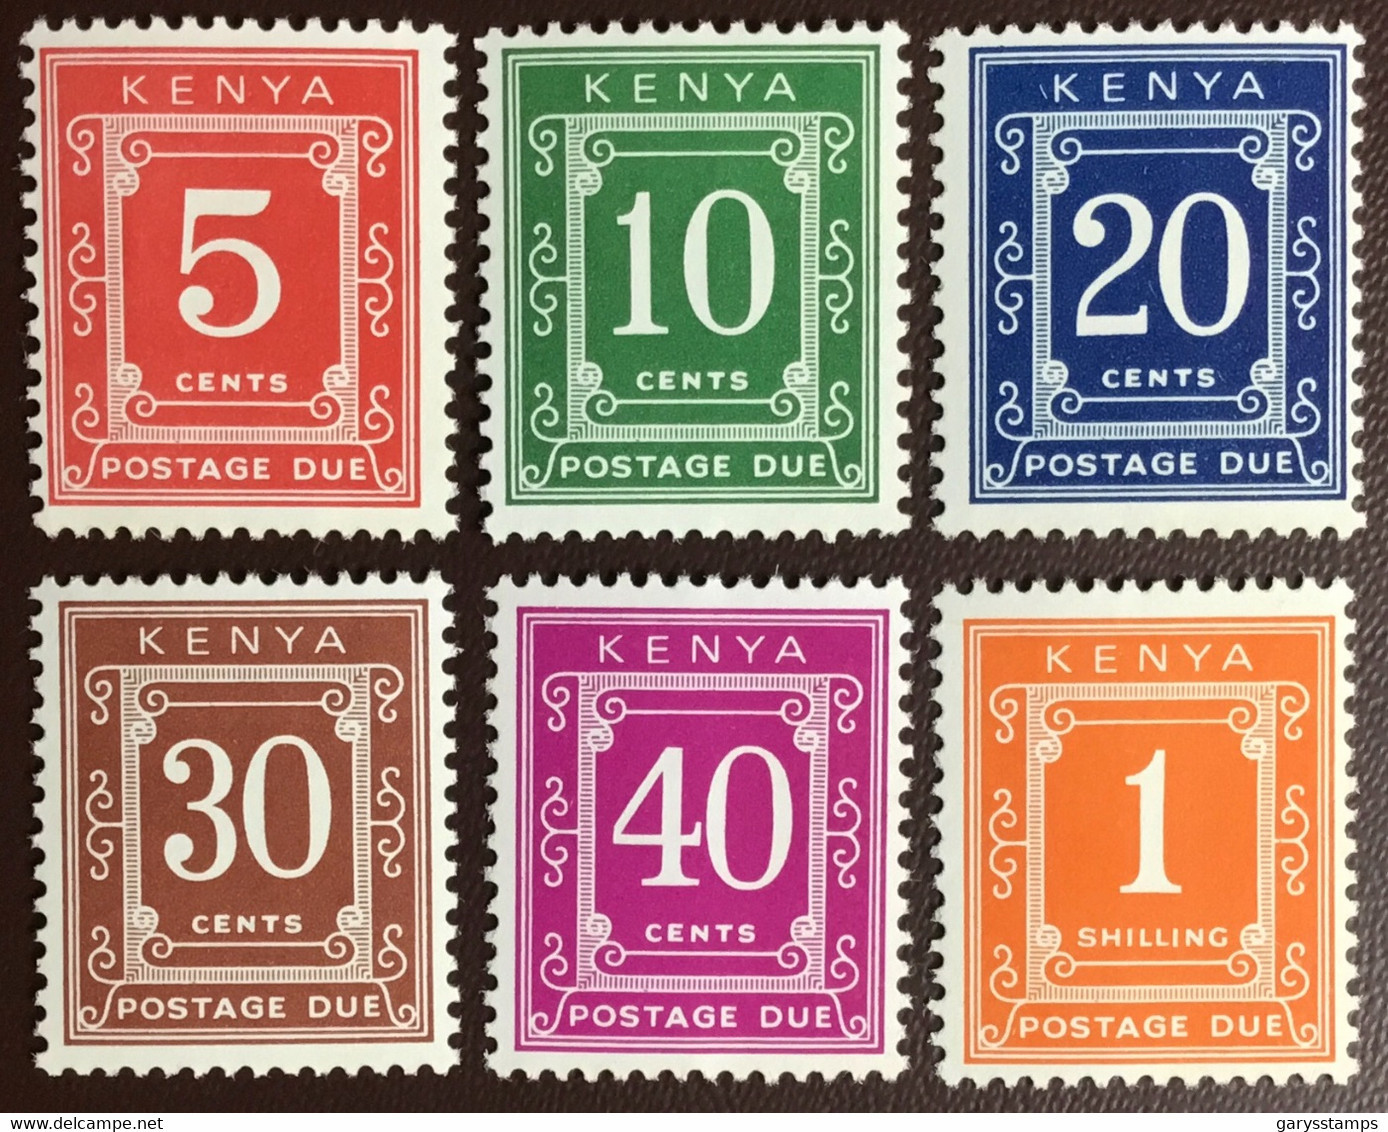 Kenya 1967 Postage Due Set MNH - Kenya (1963-...)